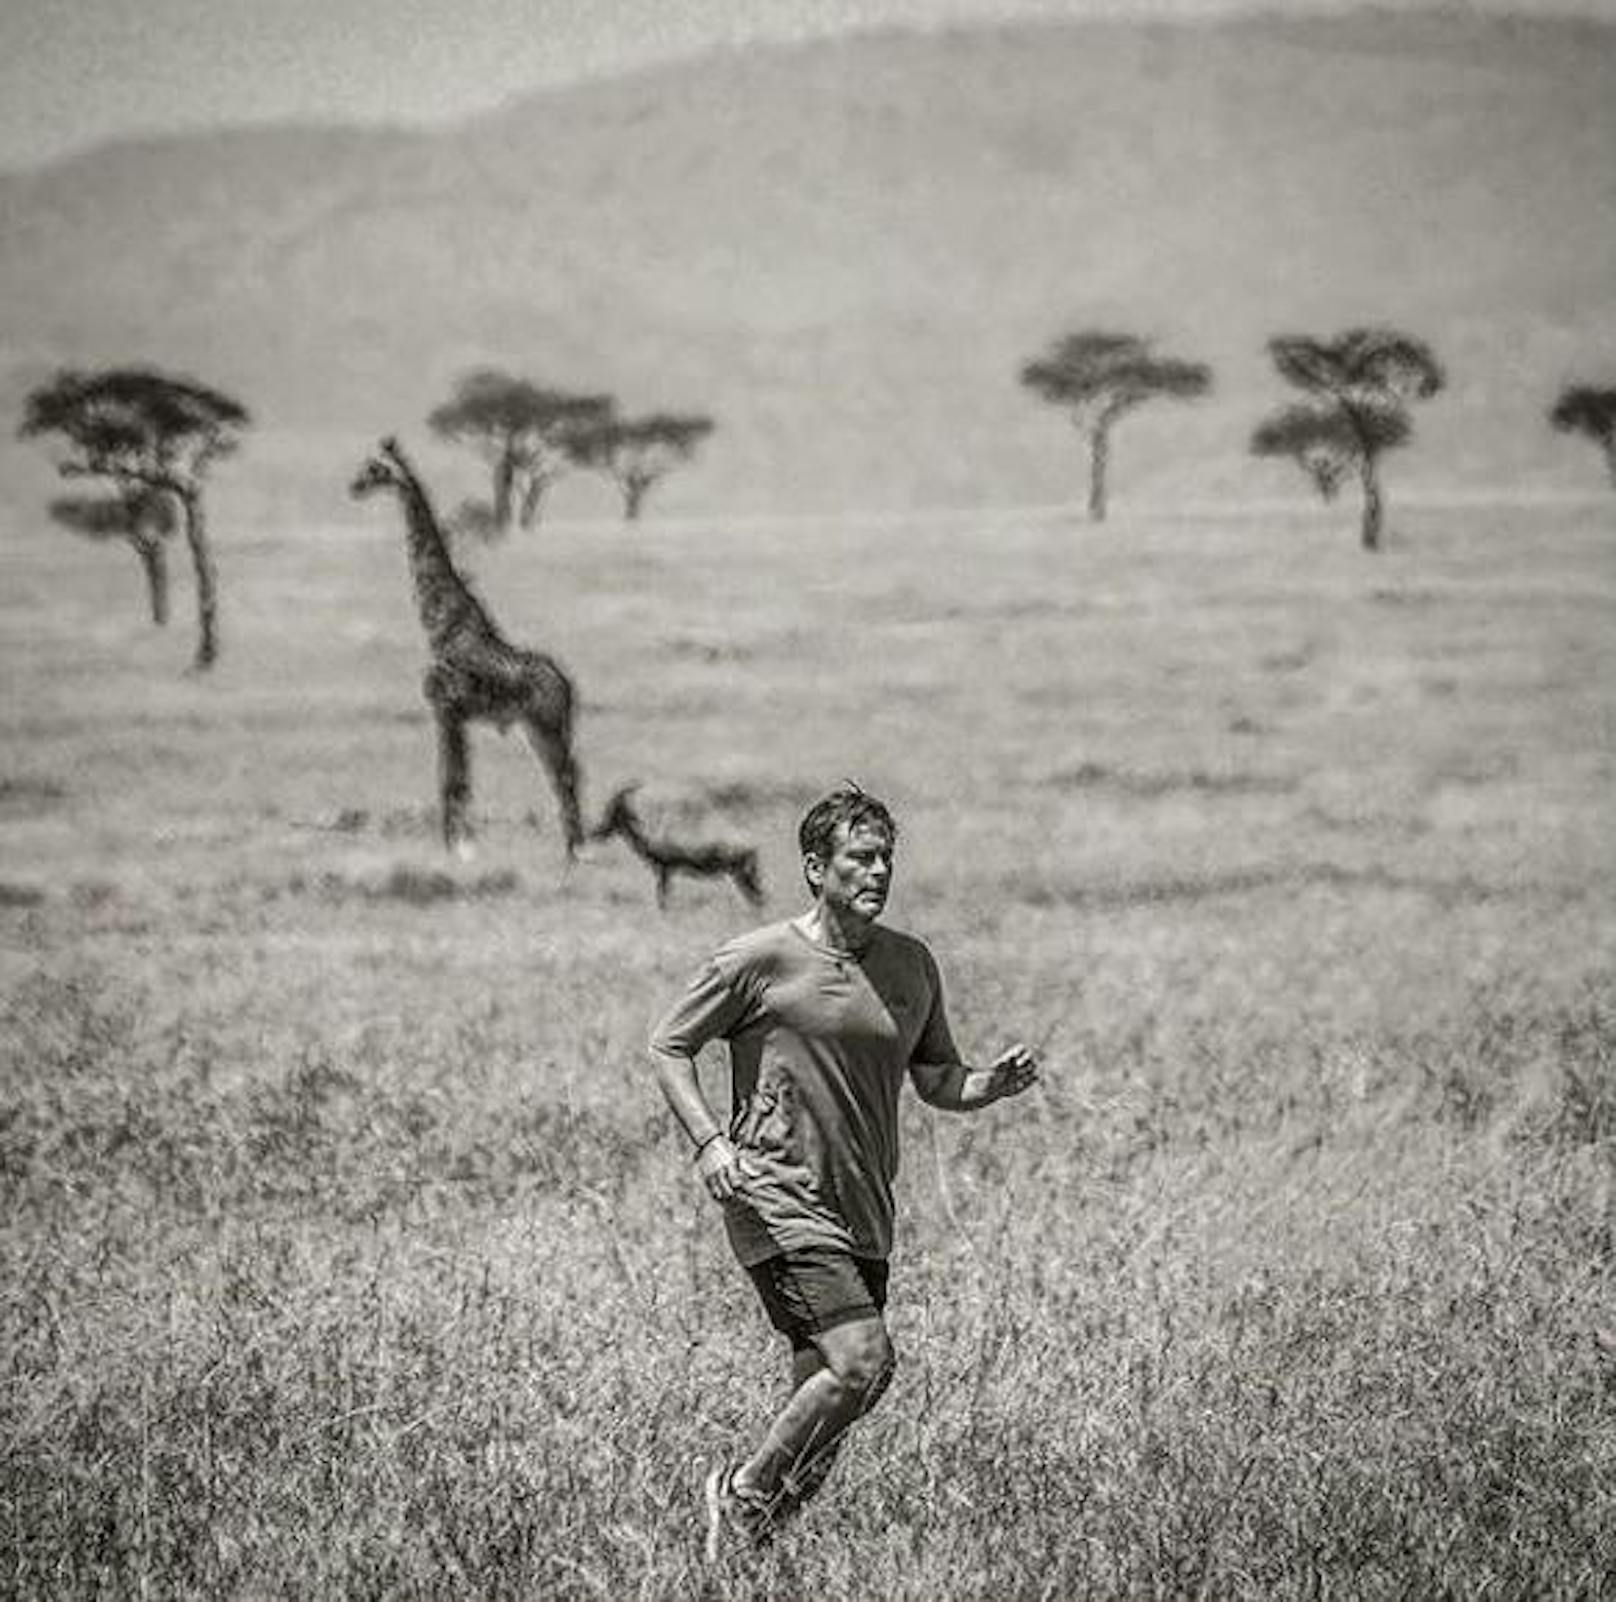 10.12.2018: Rob Lowe teilt einen eindrucksvollen Schnappschuss, auf dem er durch die Serengeti joggt. Giraffe und Gazelle im Hintergrund inklusive. Zum Glück waren keine Löwen in der Nähe.